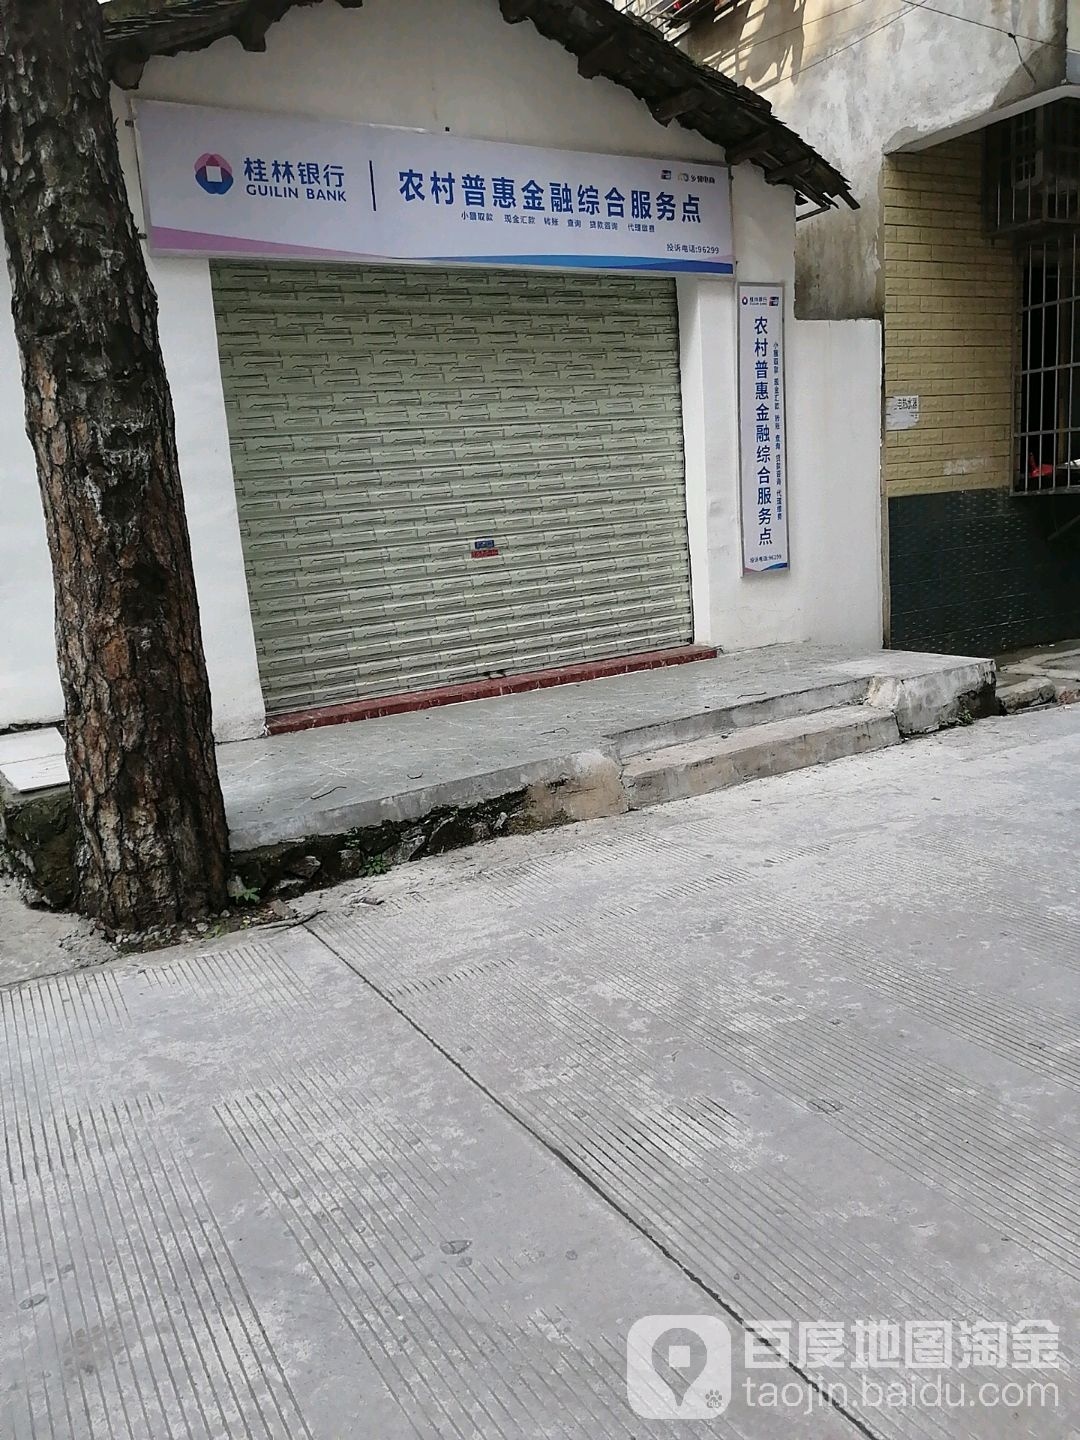 桂林银行朝阳乡莫家坪村浓村普惠金融综合服务点